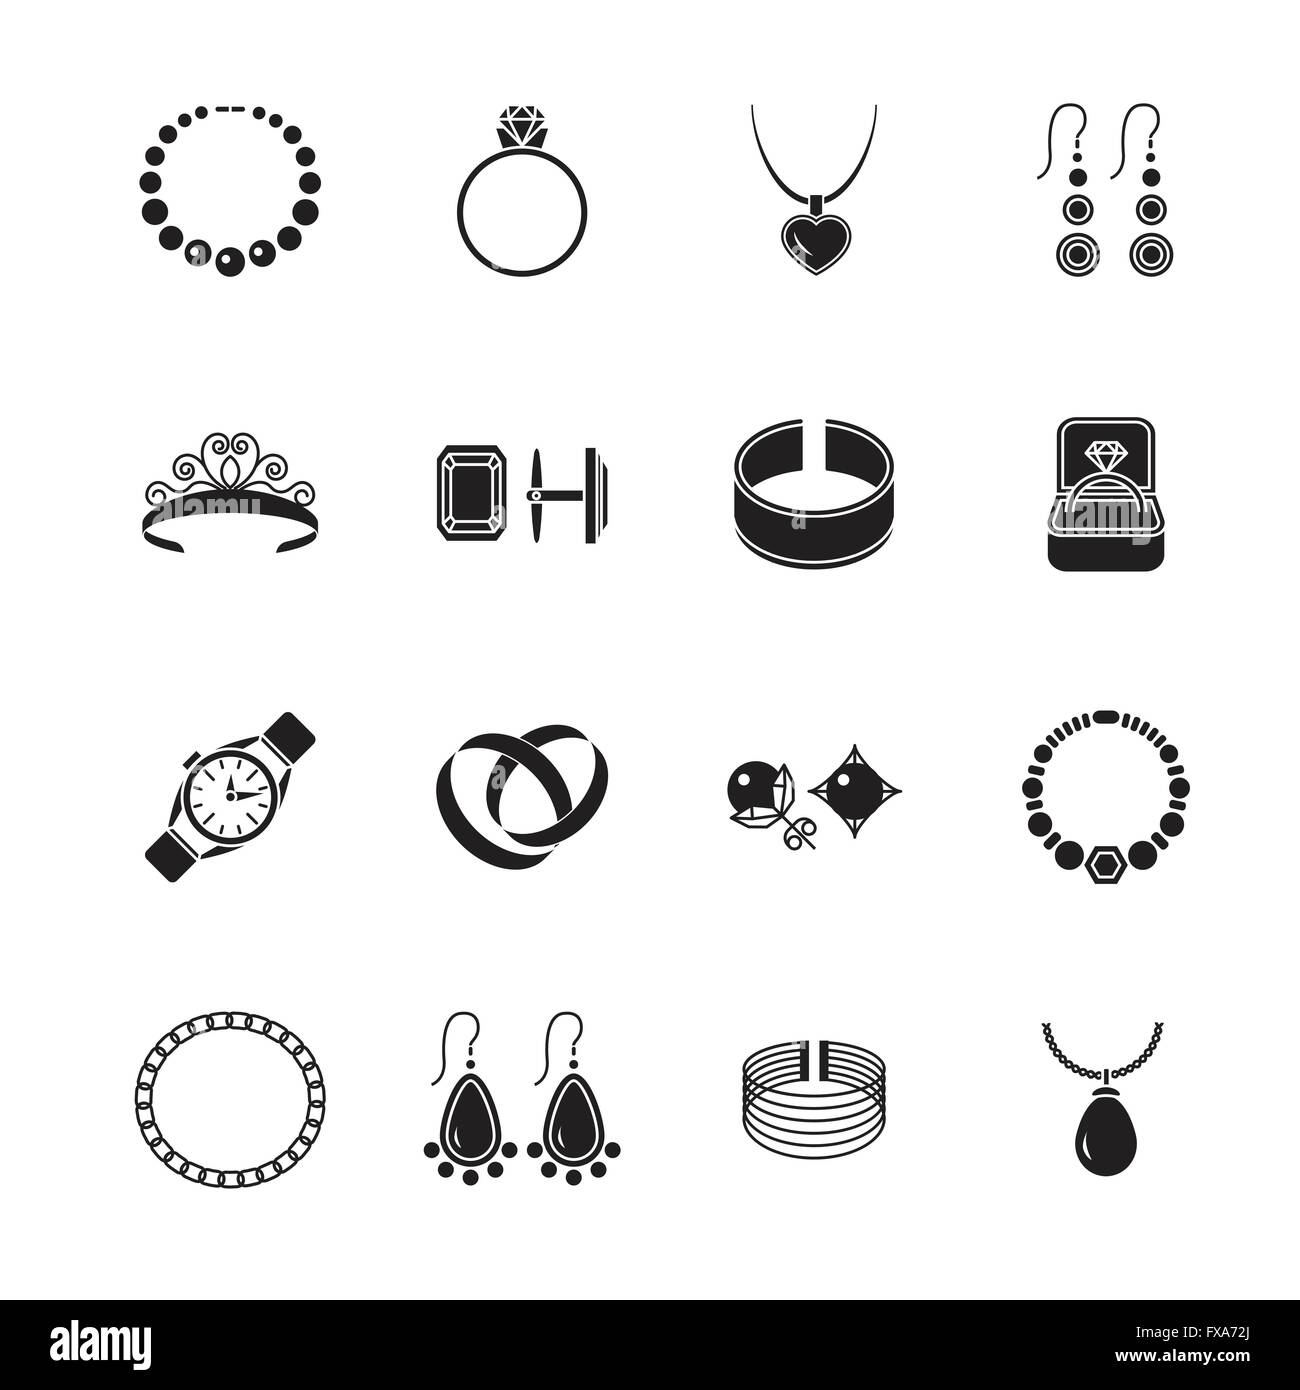 Jewelry icon black Stock Vector Image & Art - Alamy